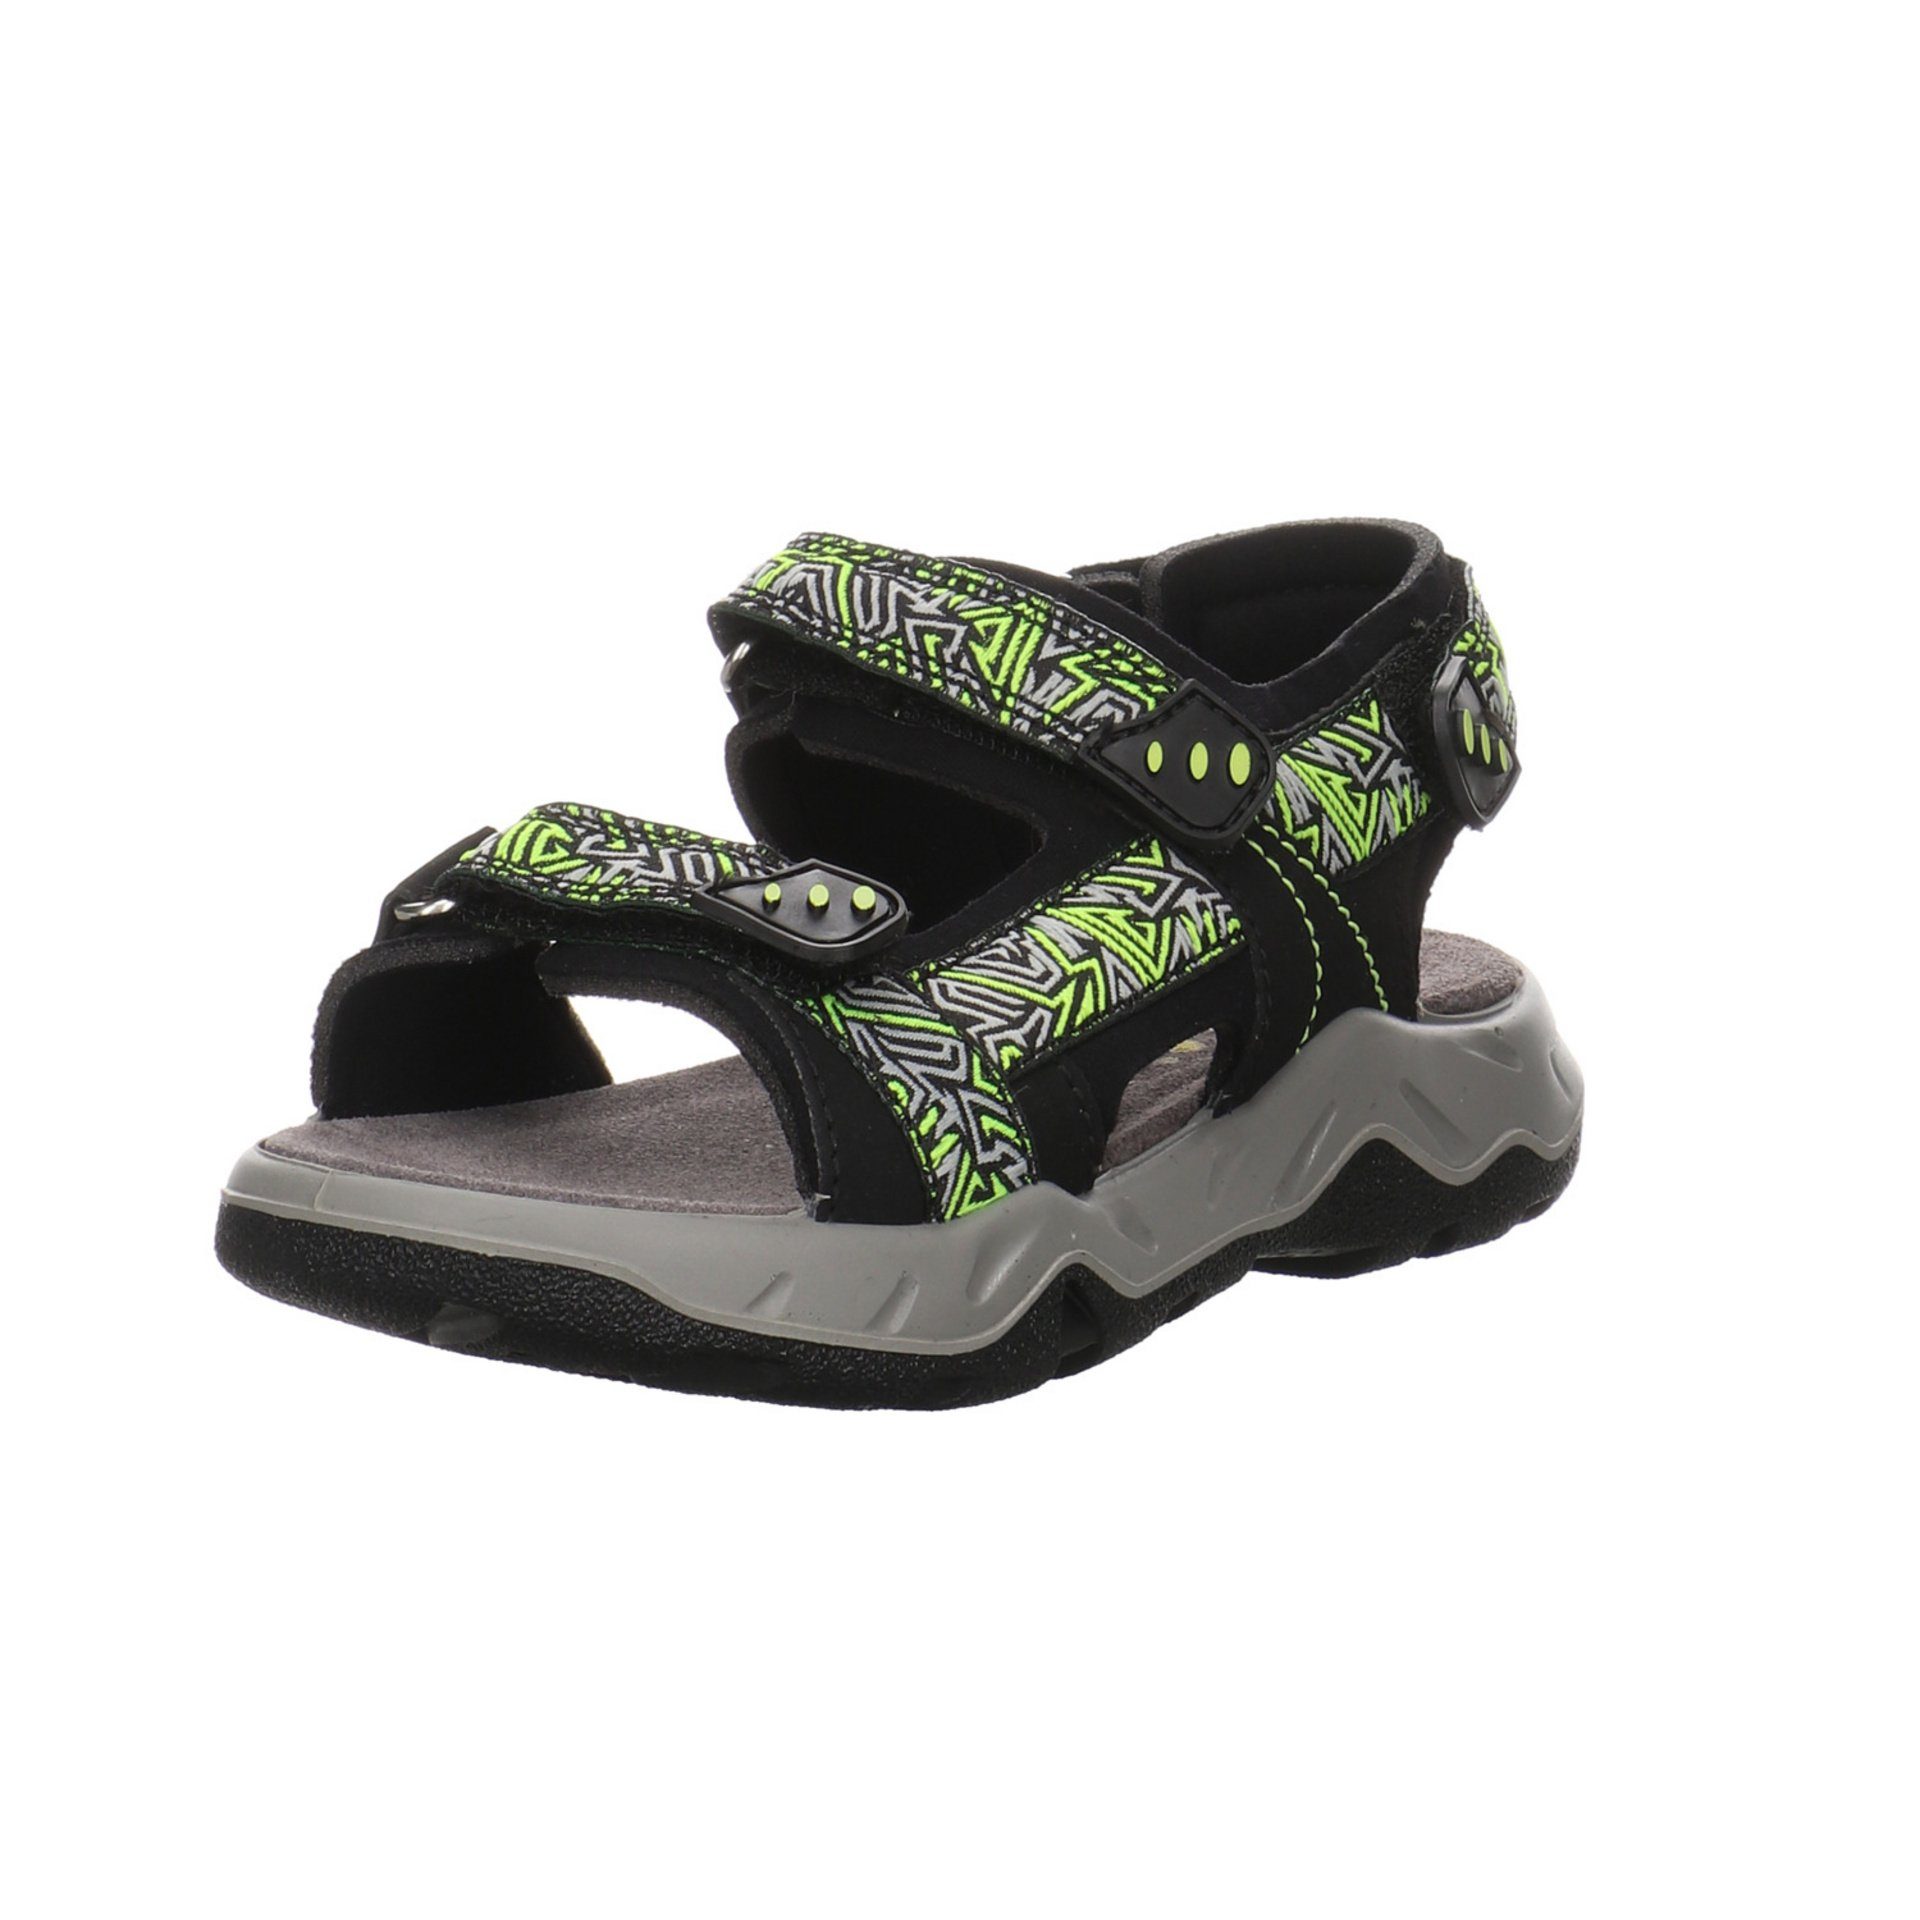 Die Preise fallen nach und nach! Salamander Lurchi Jungen Sandalen Multi Black Odono Kinderschuhe Sandale Schuhe Synthetikkombination Sandale